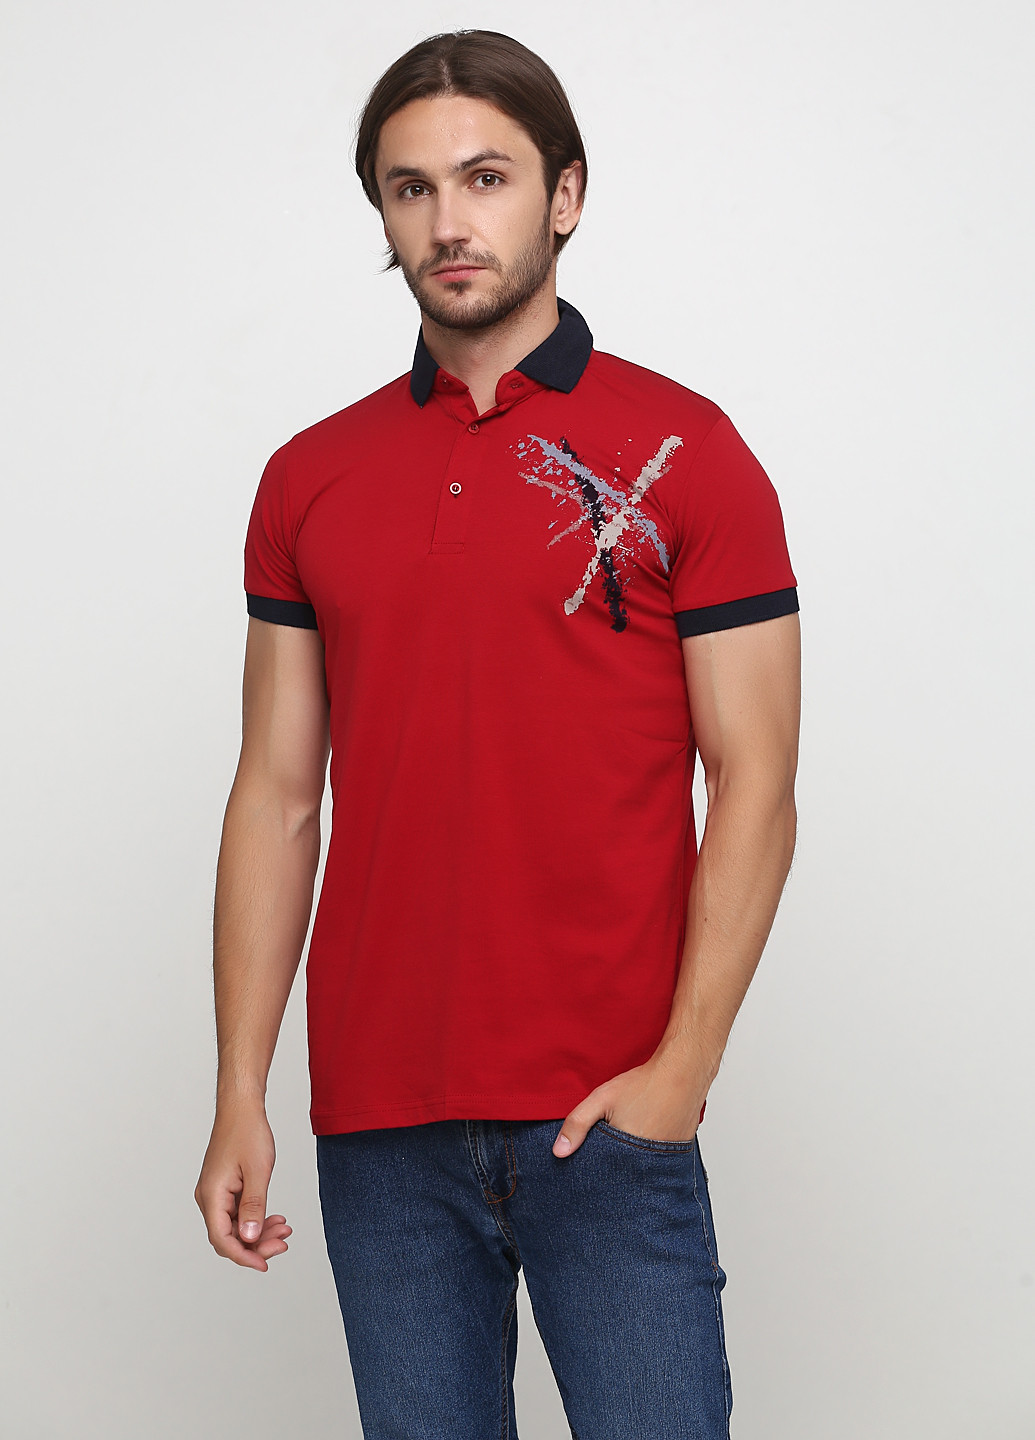 Бордовая футболка-поло для мужчин Golf с рисунком